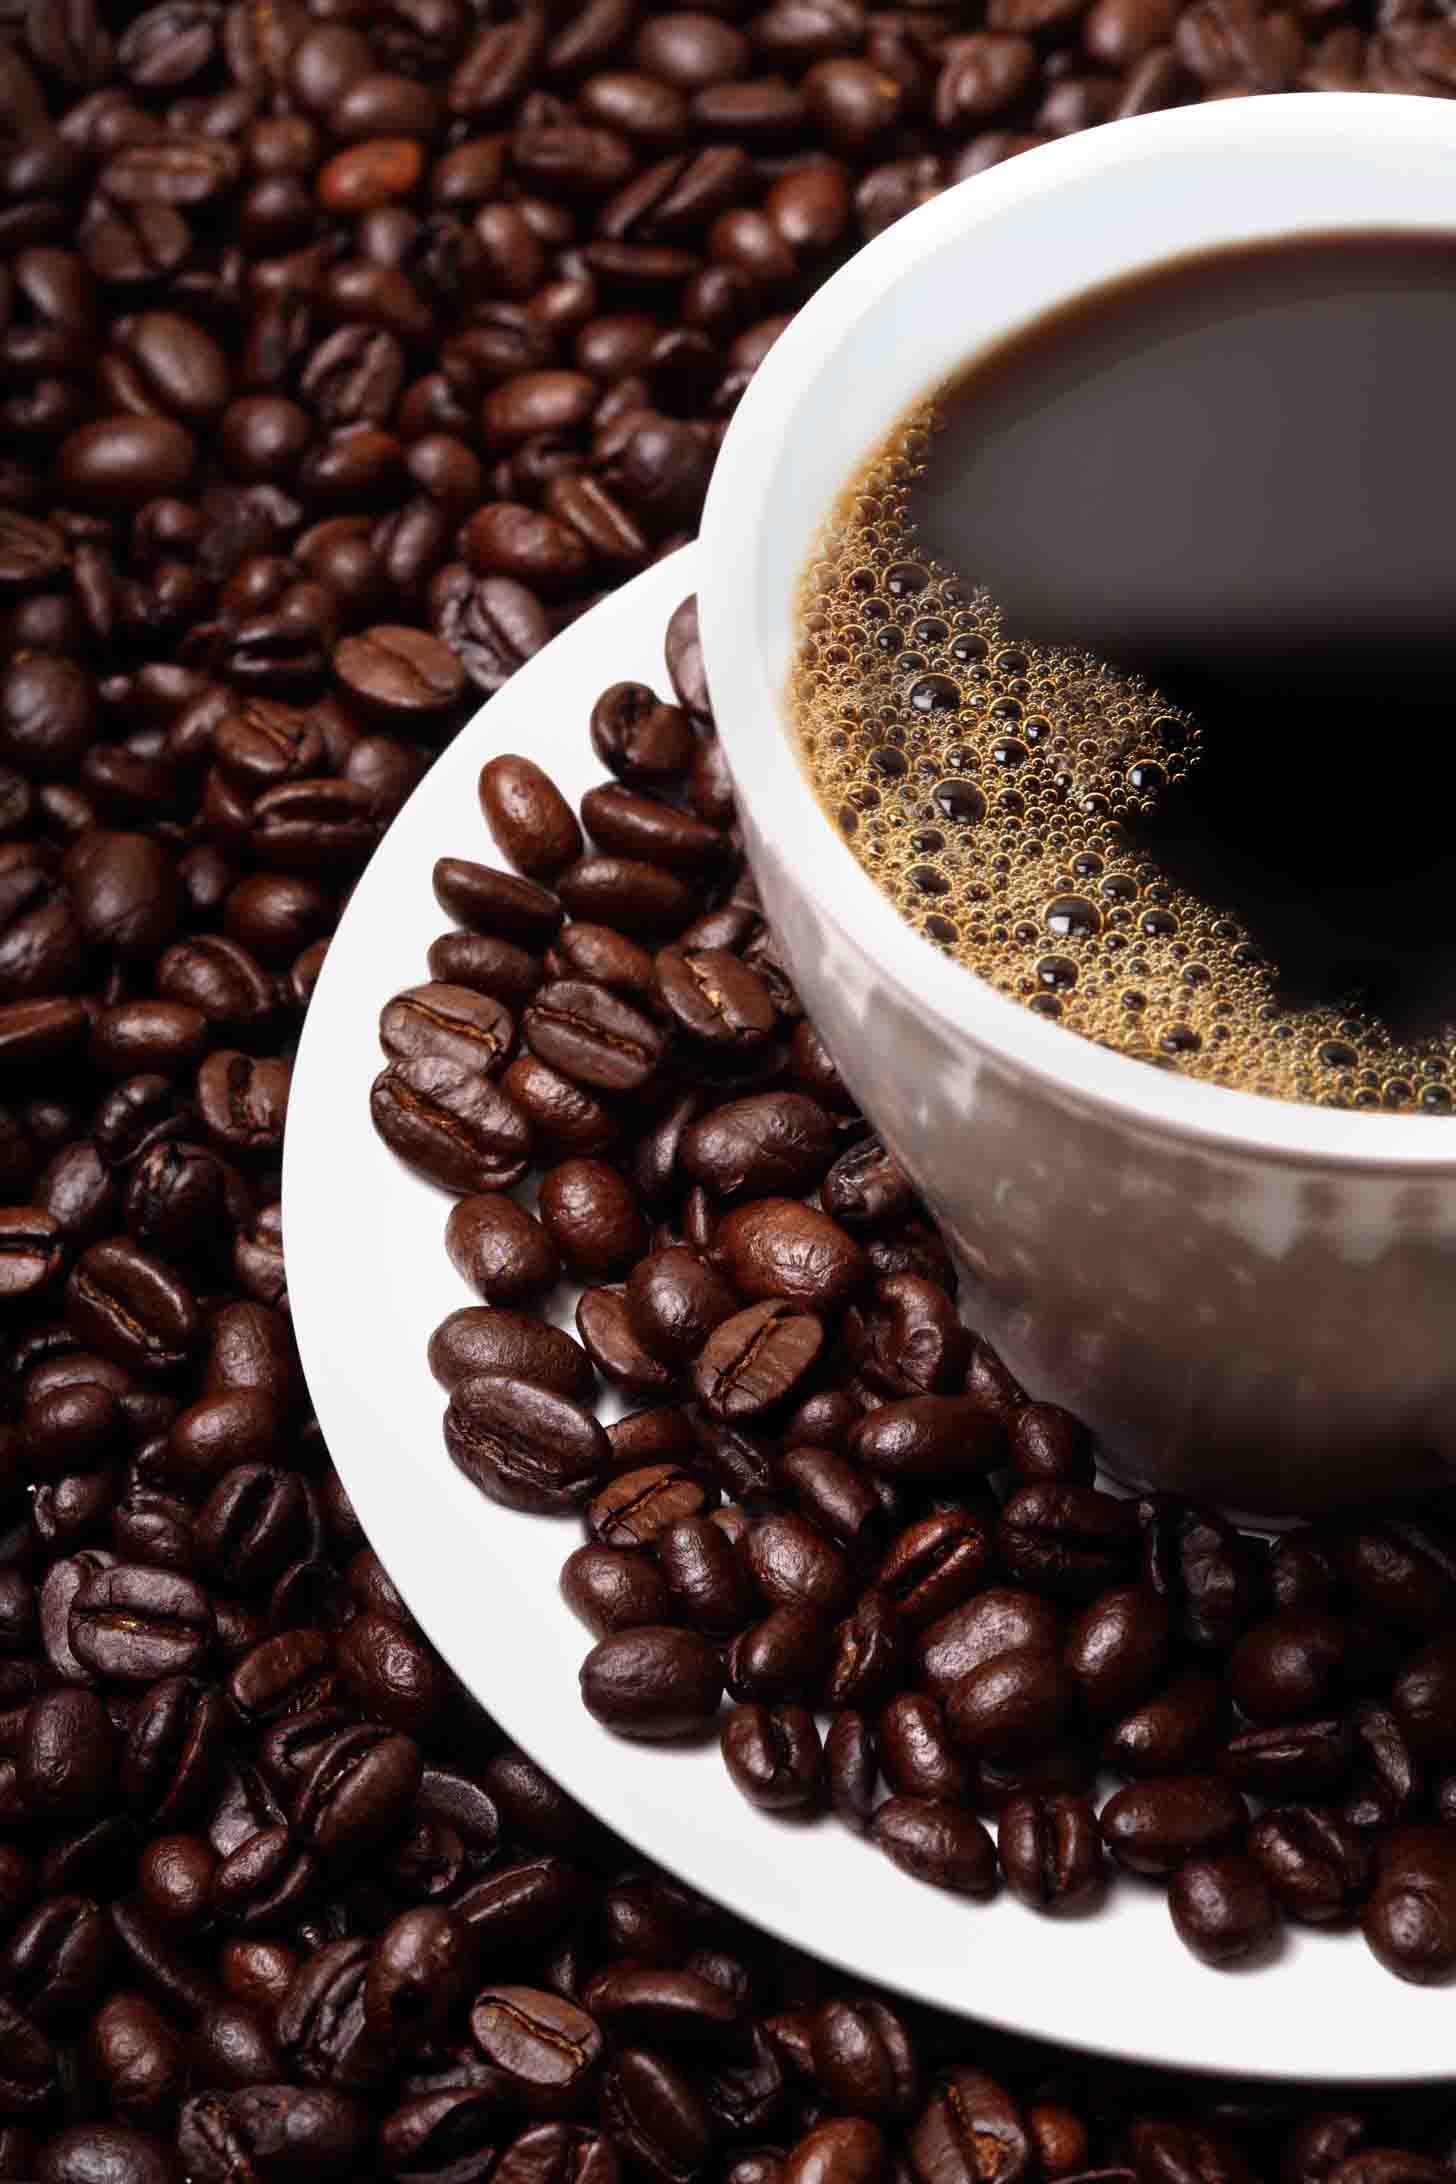 意大利Saicaf公司自动咖啡机意式咖啡机的品牌 意大利风味